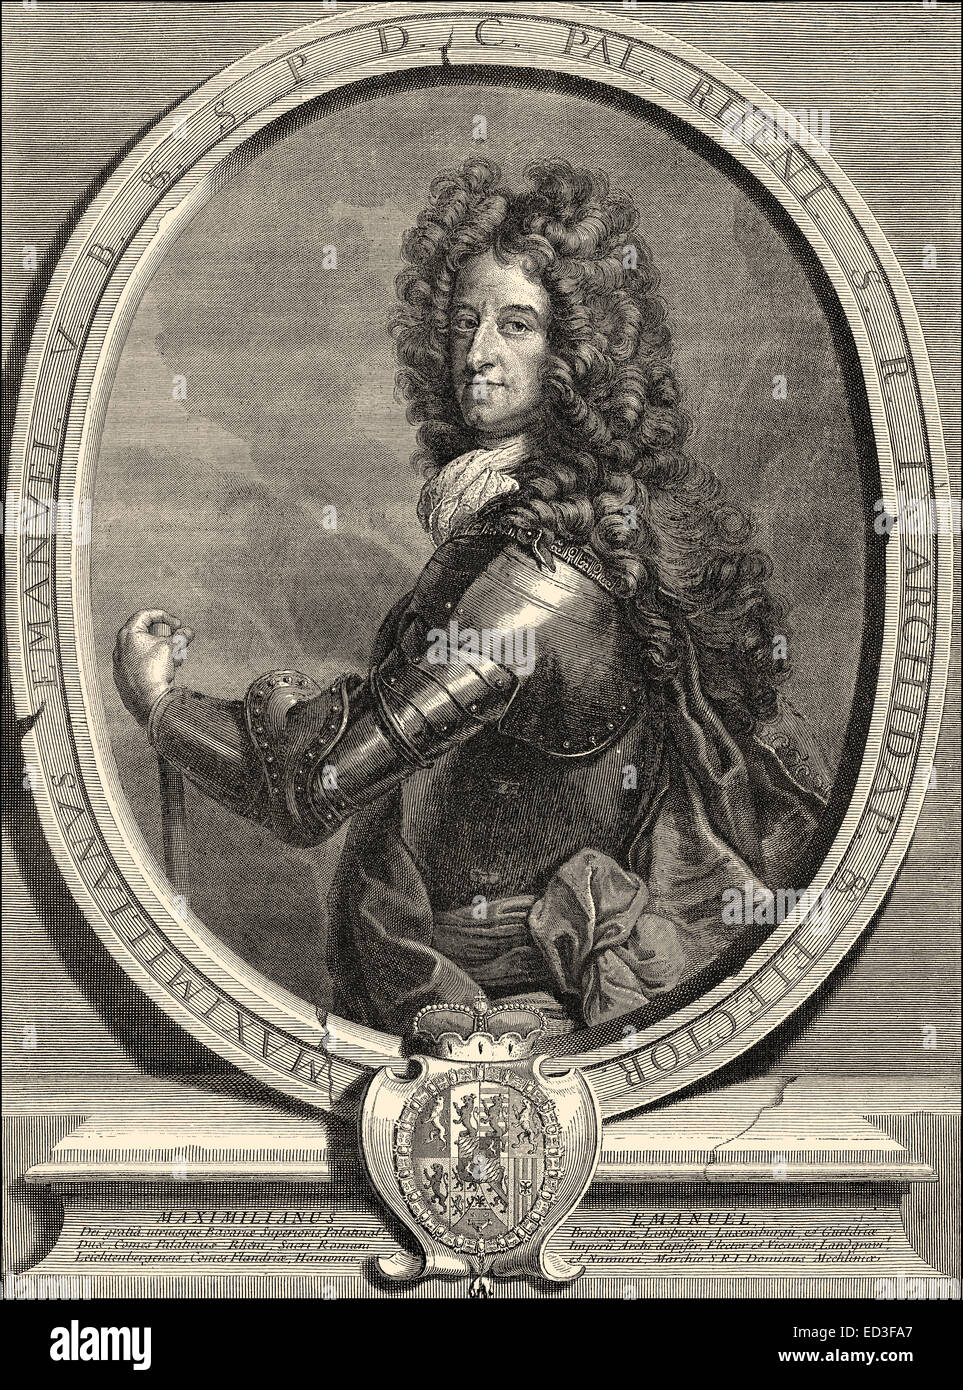 Maximiliano II, 1662 - 1726, también conocido como Max Emanuel o Maximiliano Emanuel, Wittelsbach regente de Baviera y una de las t Kurfuerst Foto de stock